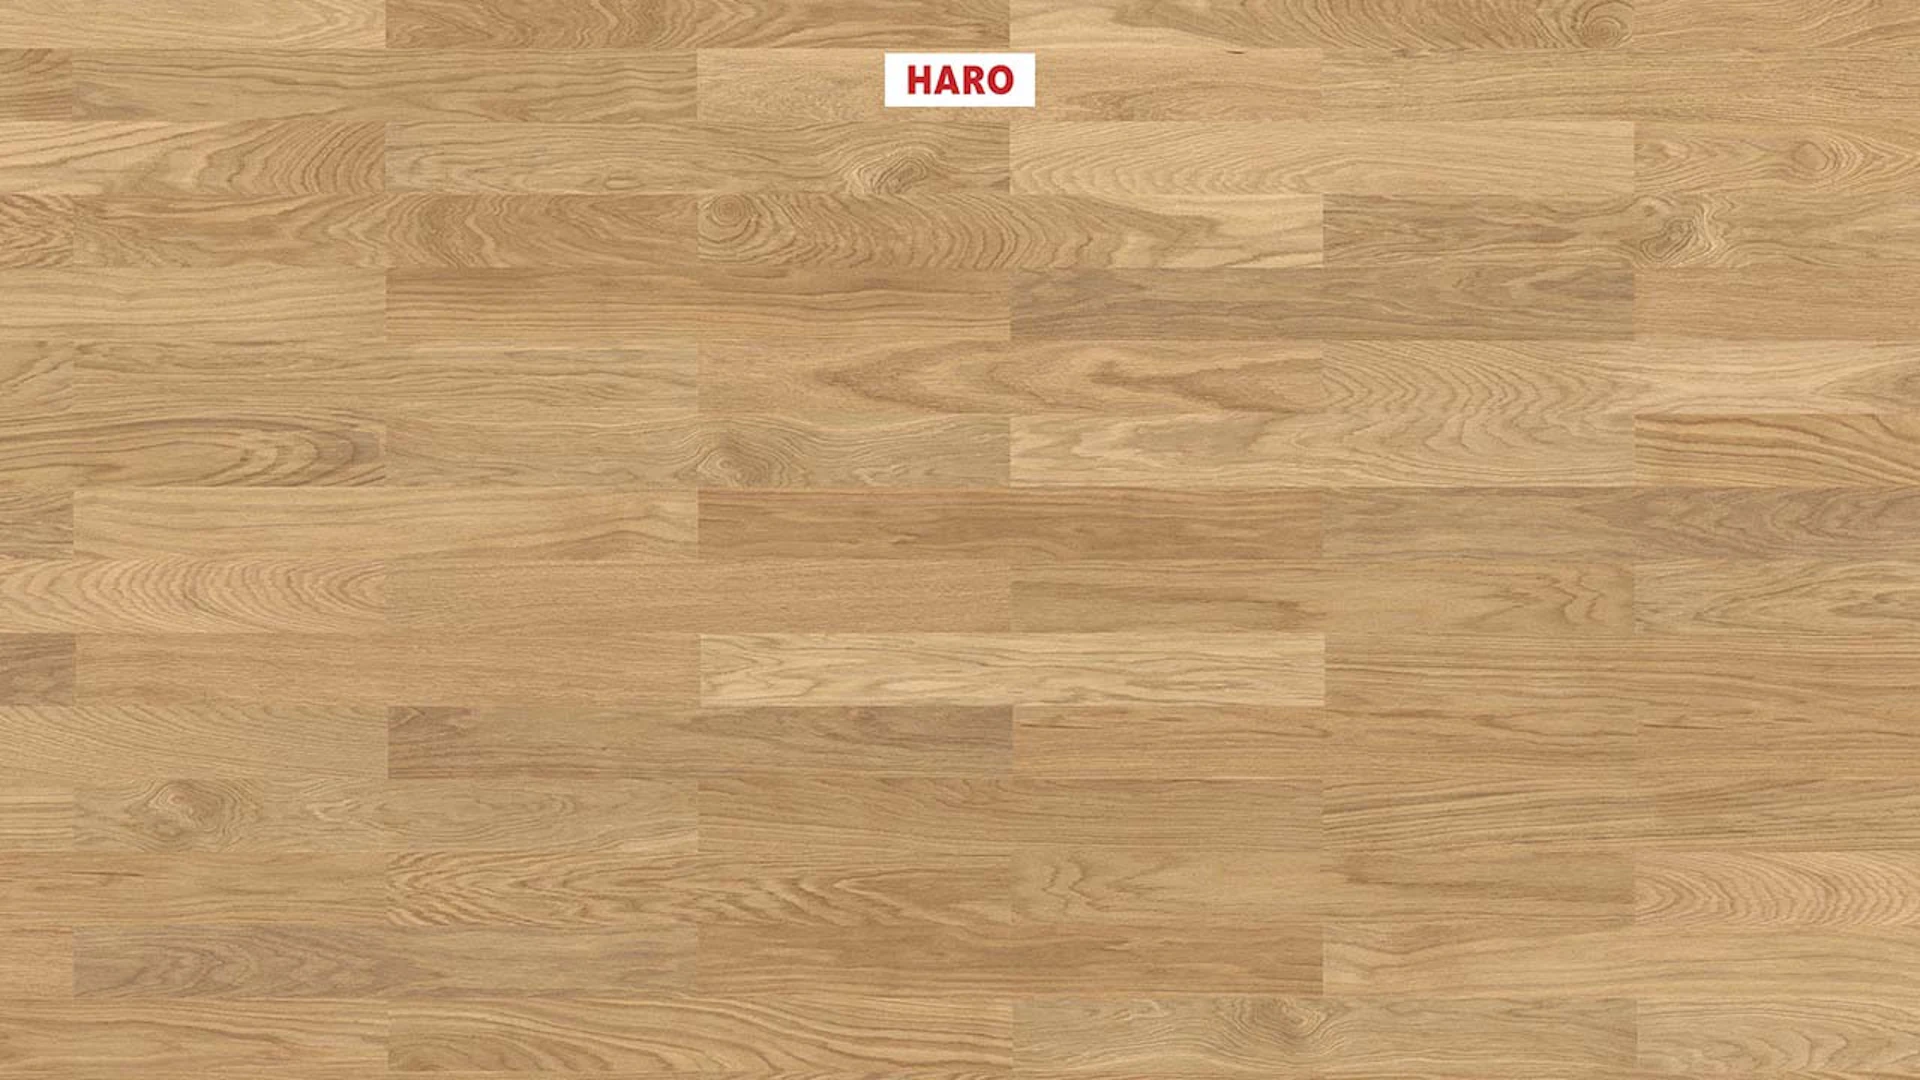 Haro Parquet Flooring - Series 4000 NF Stab Classico naturaLin plus Oak invisible Trend (543544)